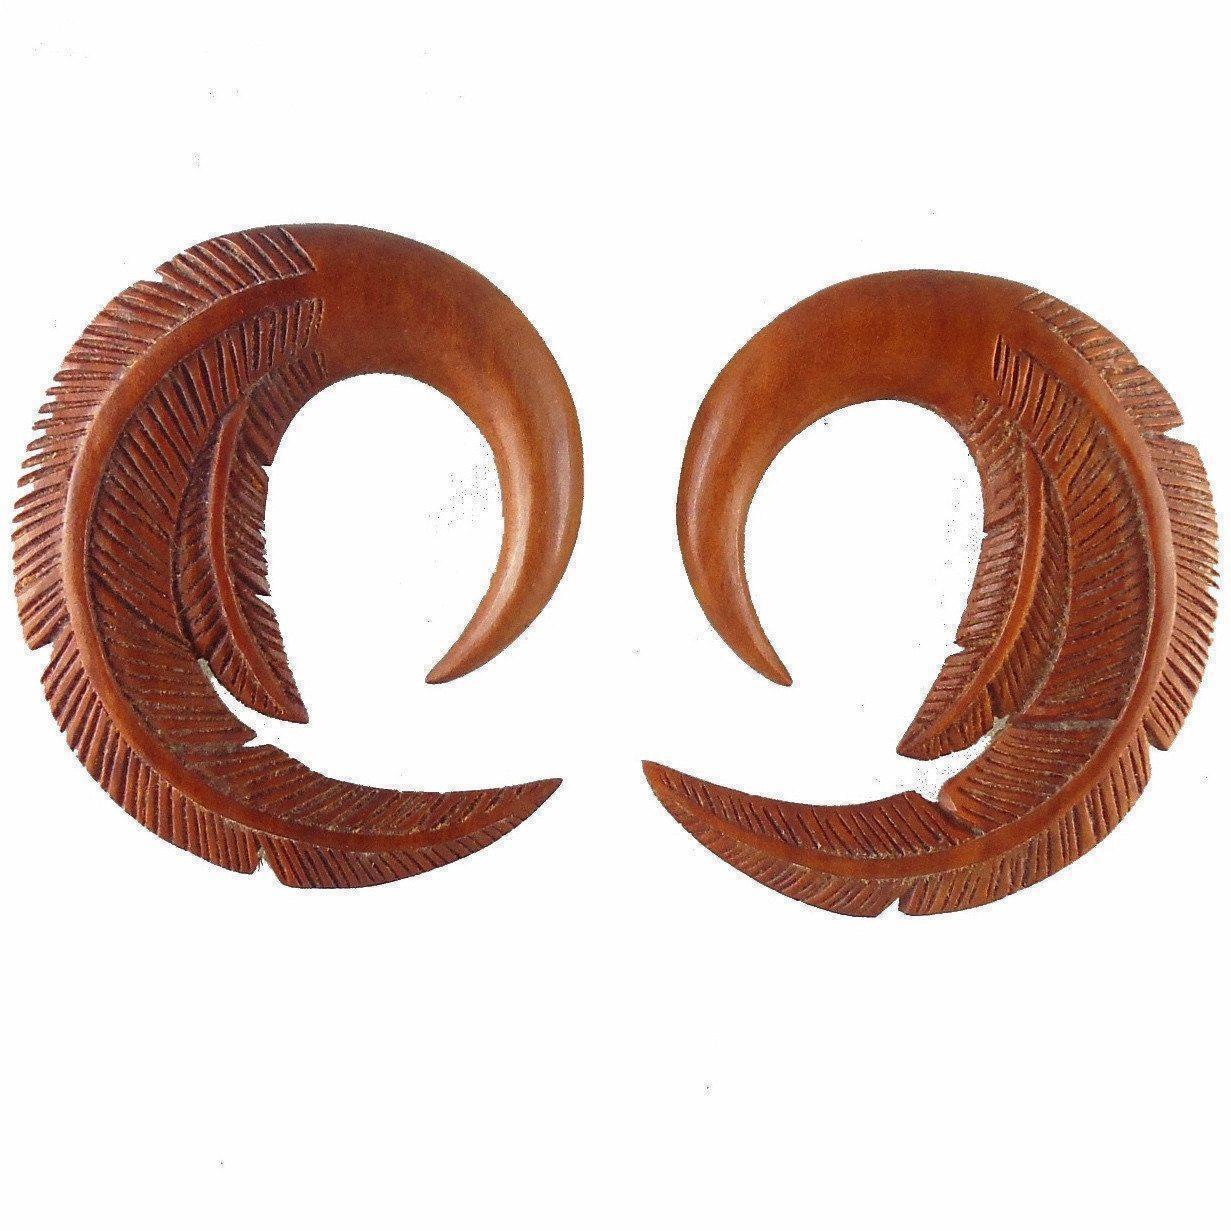 00 Gauge Earrings :|: Feather. 00 Gauge Wood Earrings. 1 3/4 inch W X 2 inch L | Wood Body Jewelry